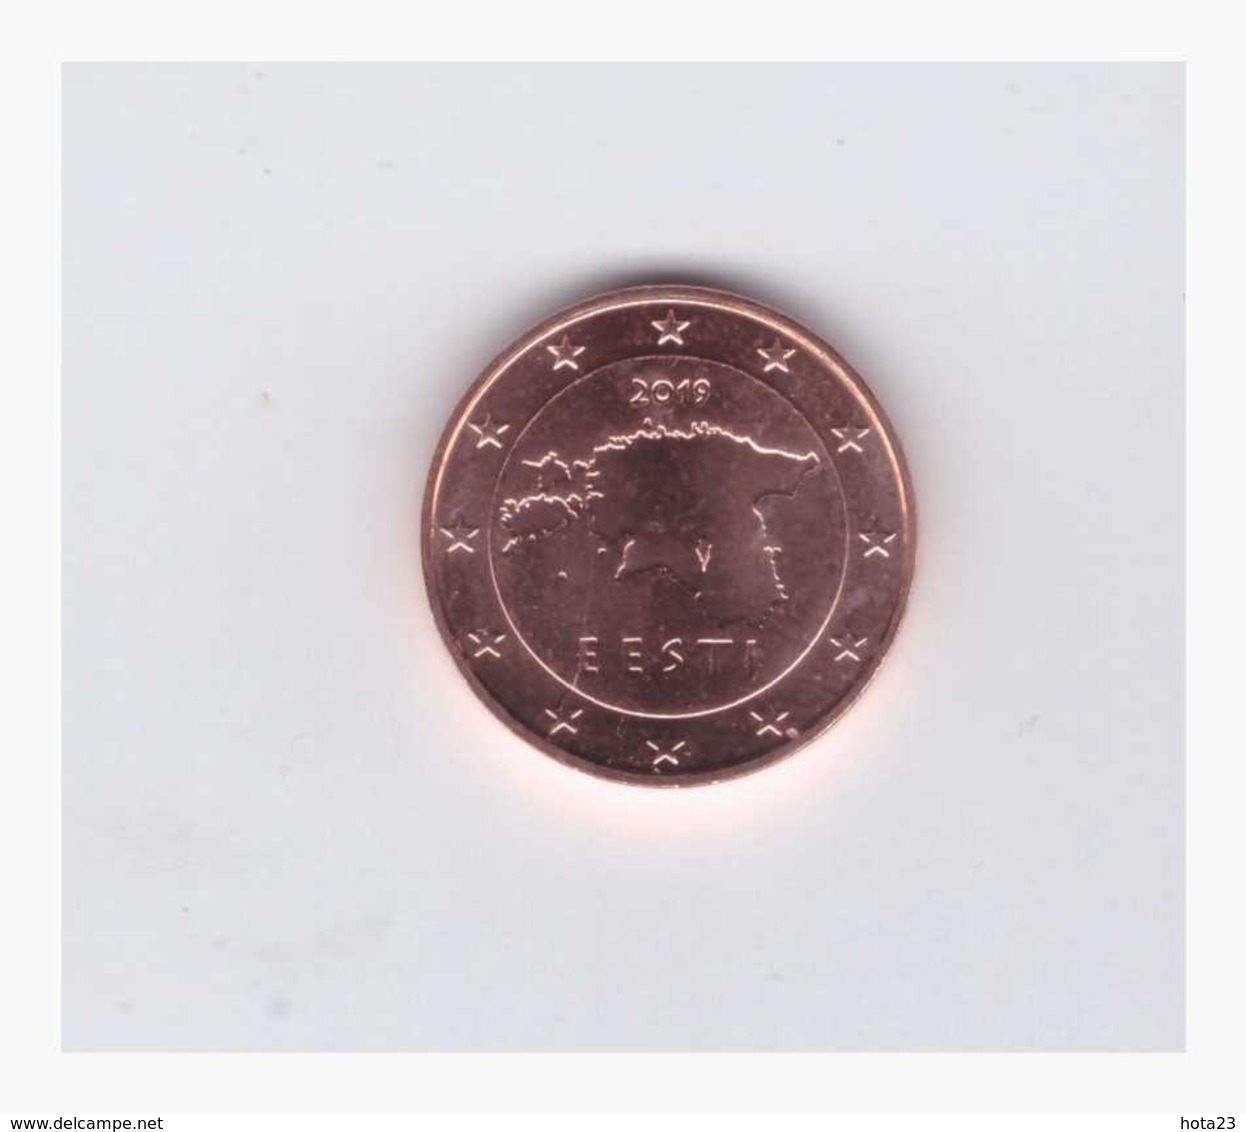 Estonia , ESTLAND , Eesti 2019 1 Euro Cent Coin From Roll UNC - Estonie